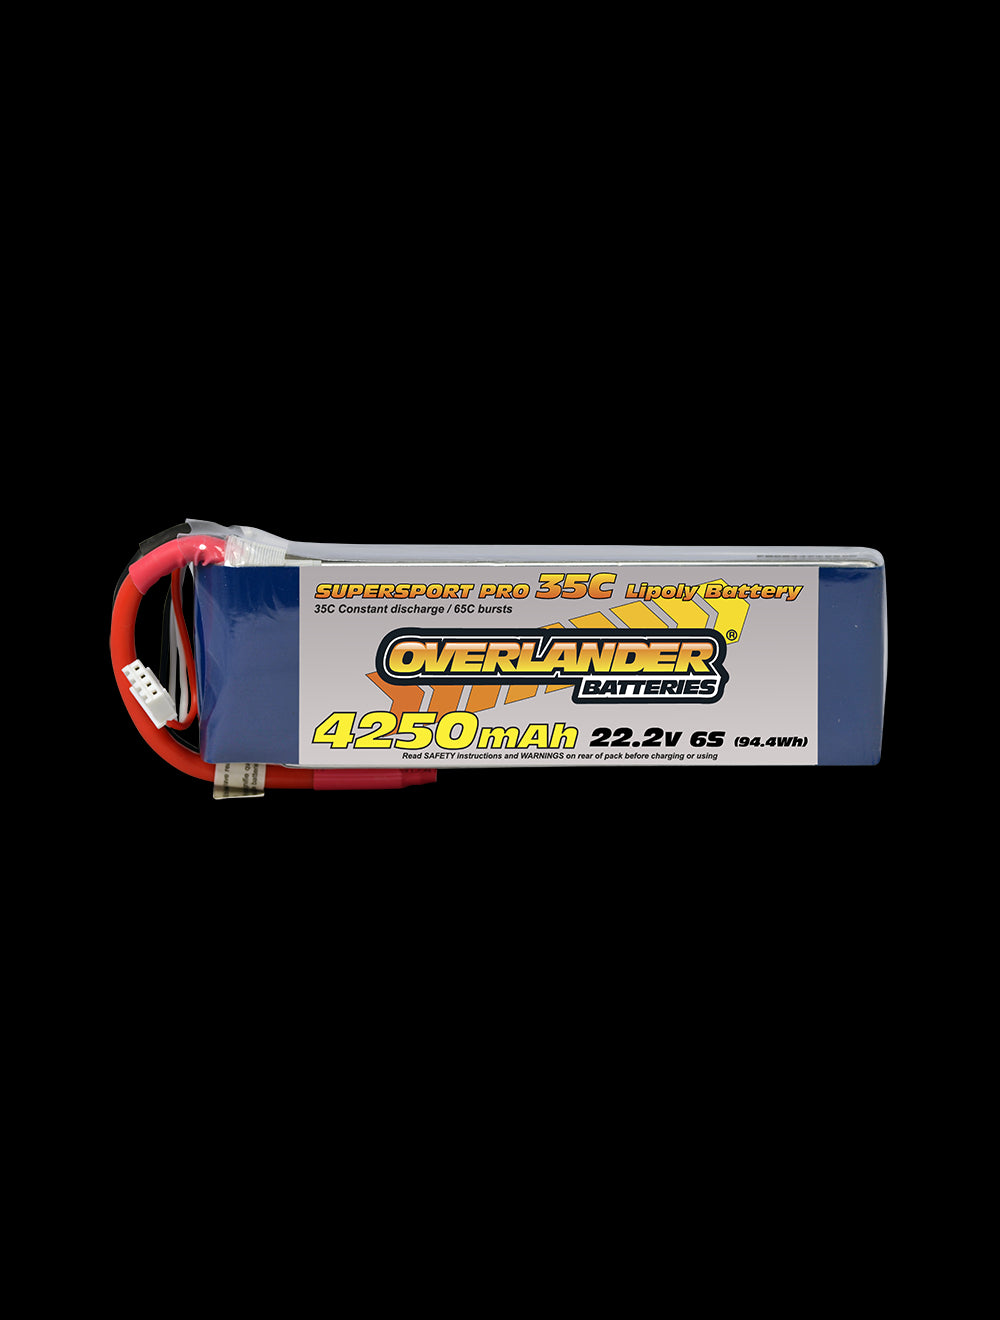 Overlander 4250mAh 22.2V 6S 35C Supersport Pro LiPo Battery - XT60 Connector 2478